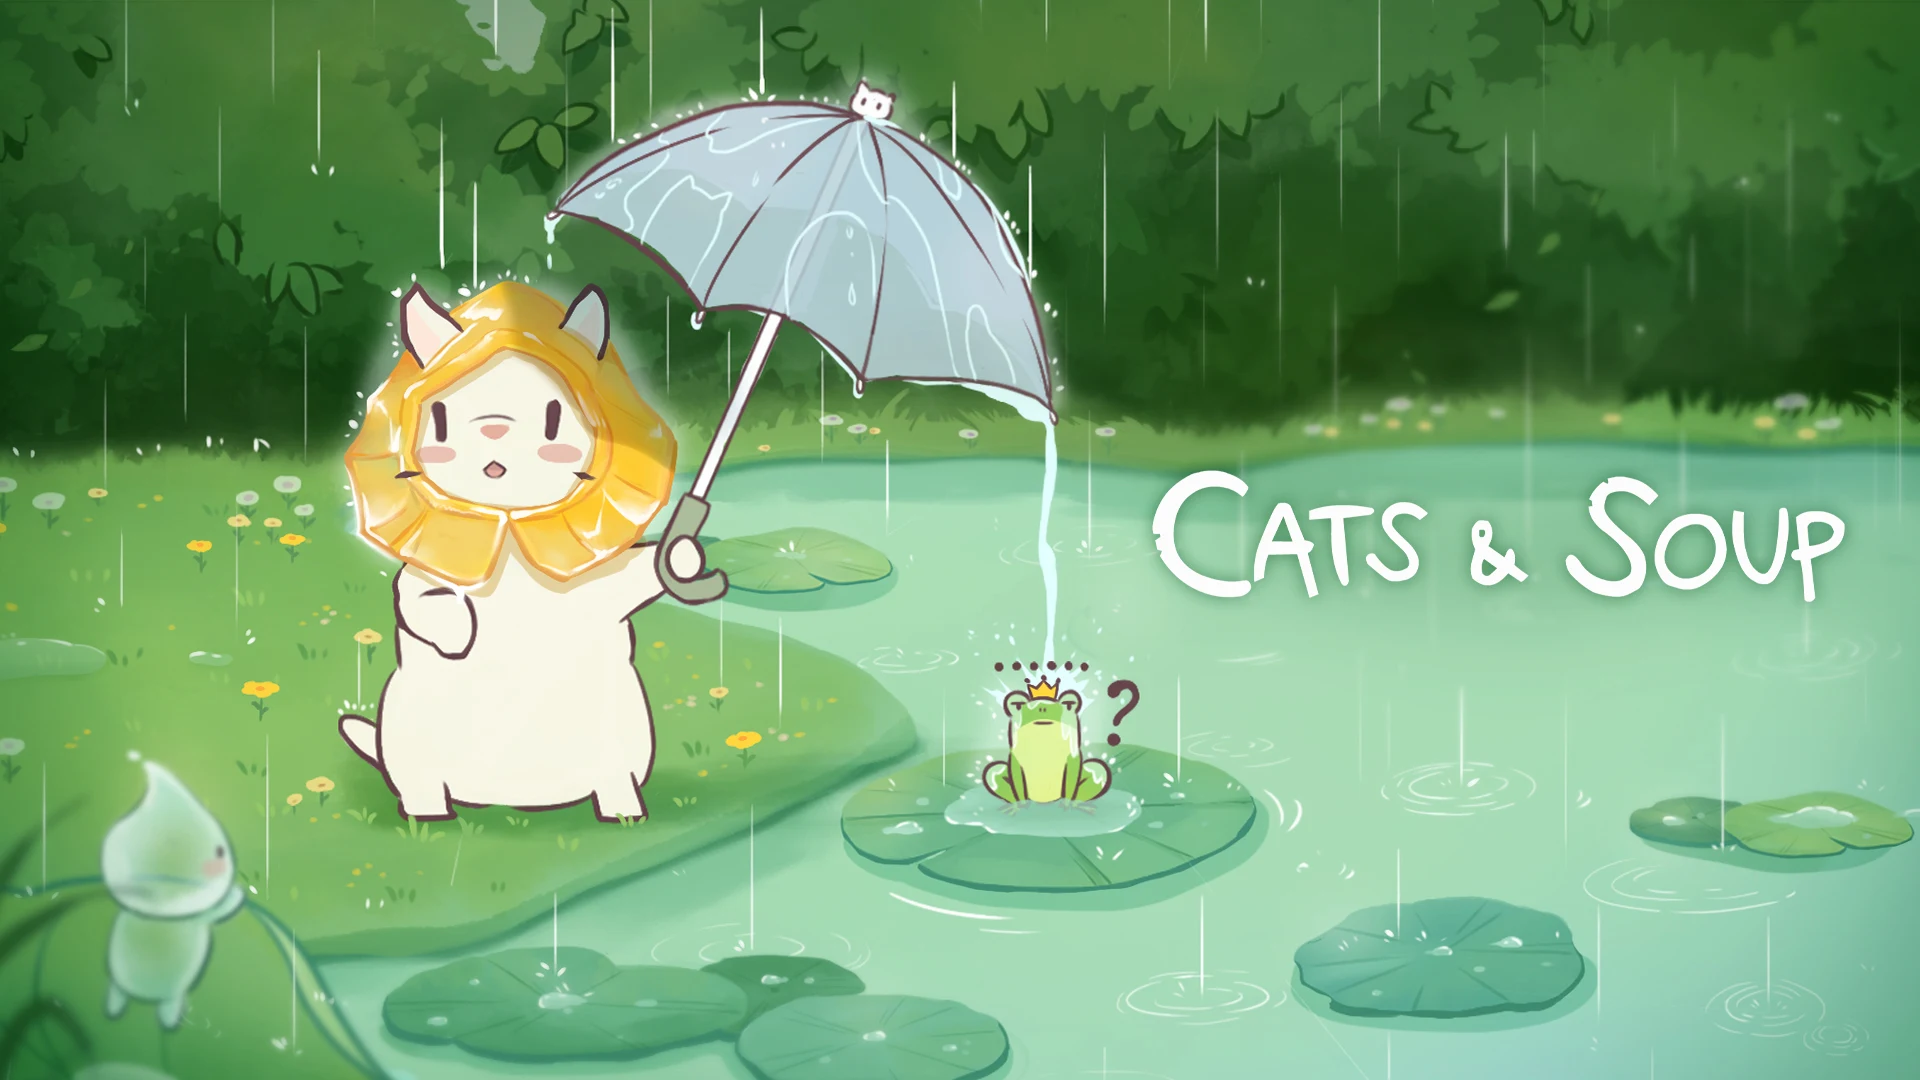 Cats & Soup mod apk free download